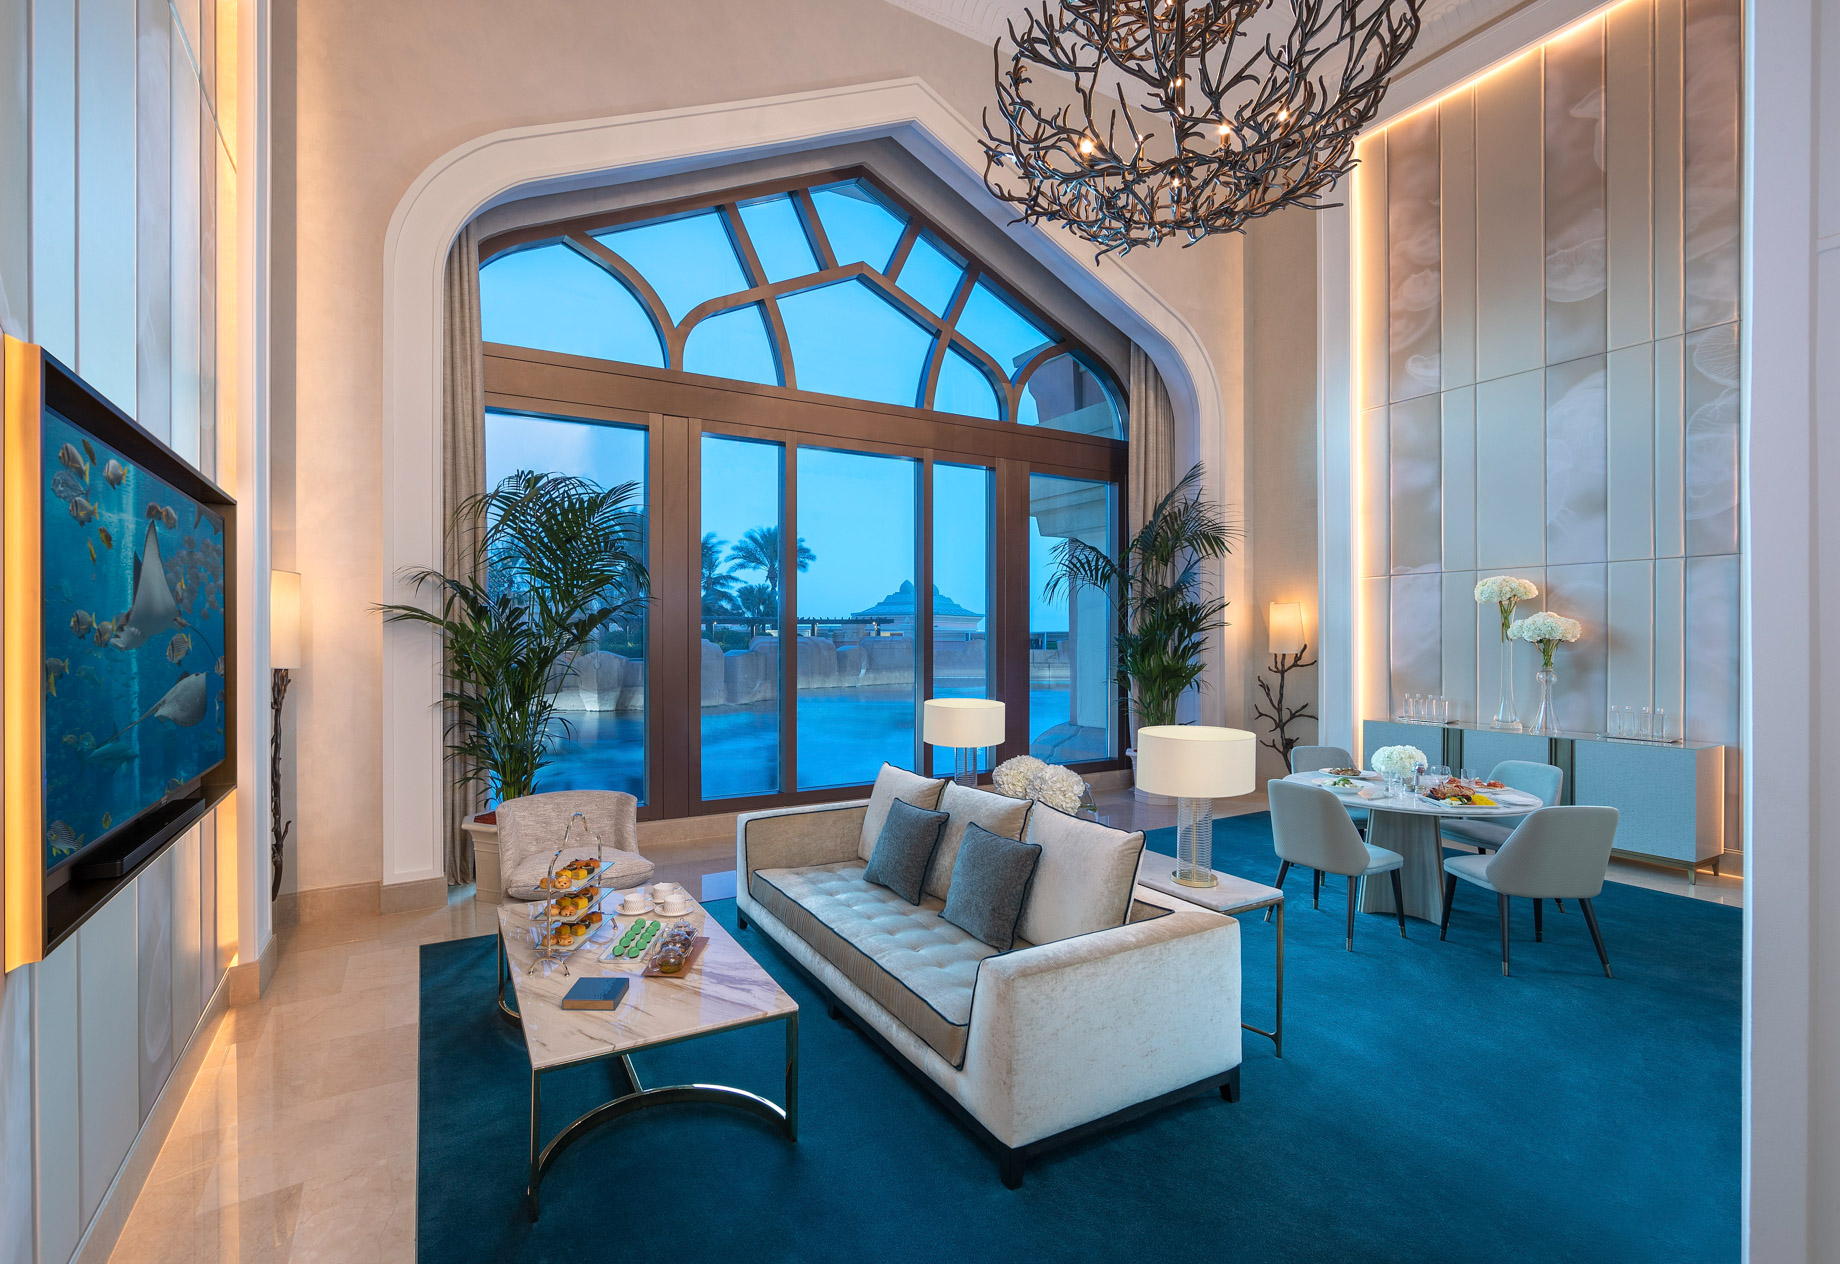 Atlantis The Palm Resort – Crescent Rd, Dubai, UAE – Underwater Suite Living Room